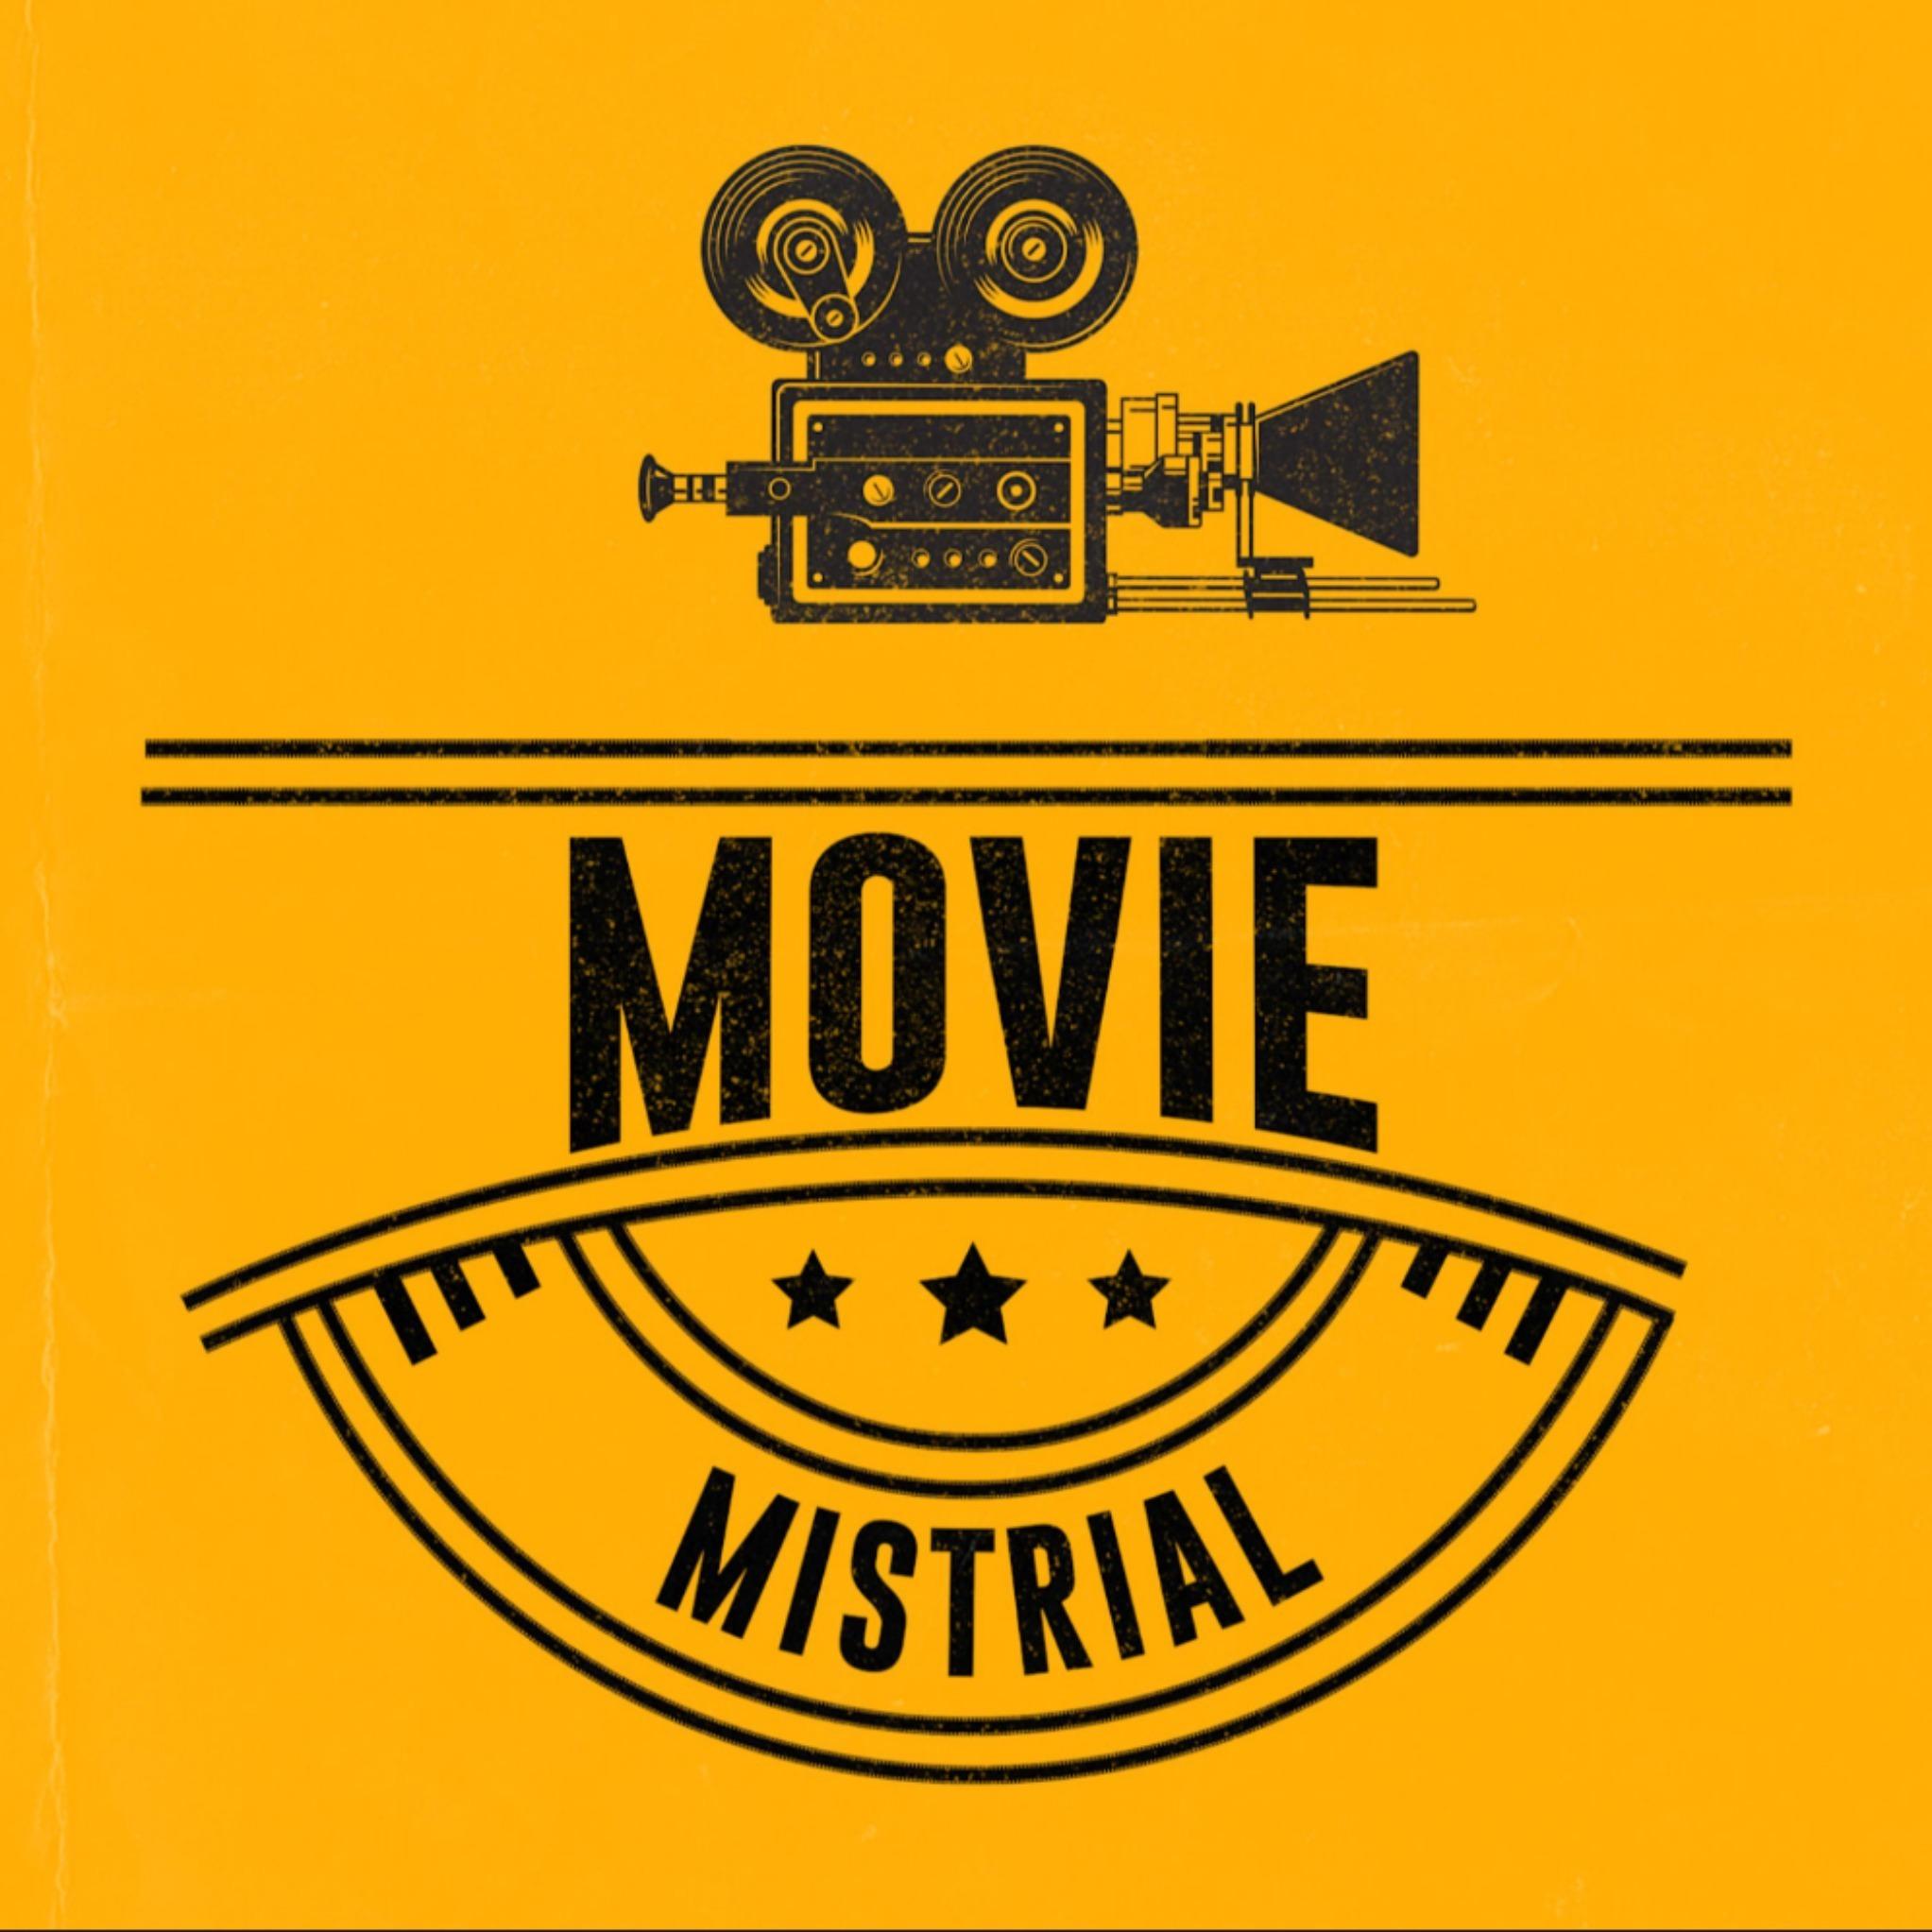 Movie Mistrial